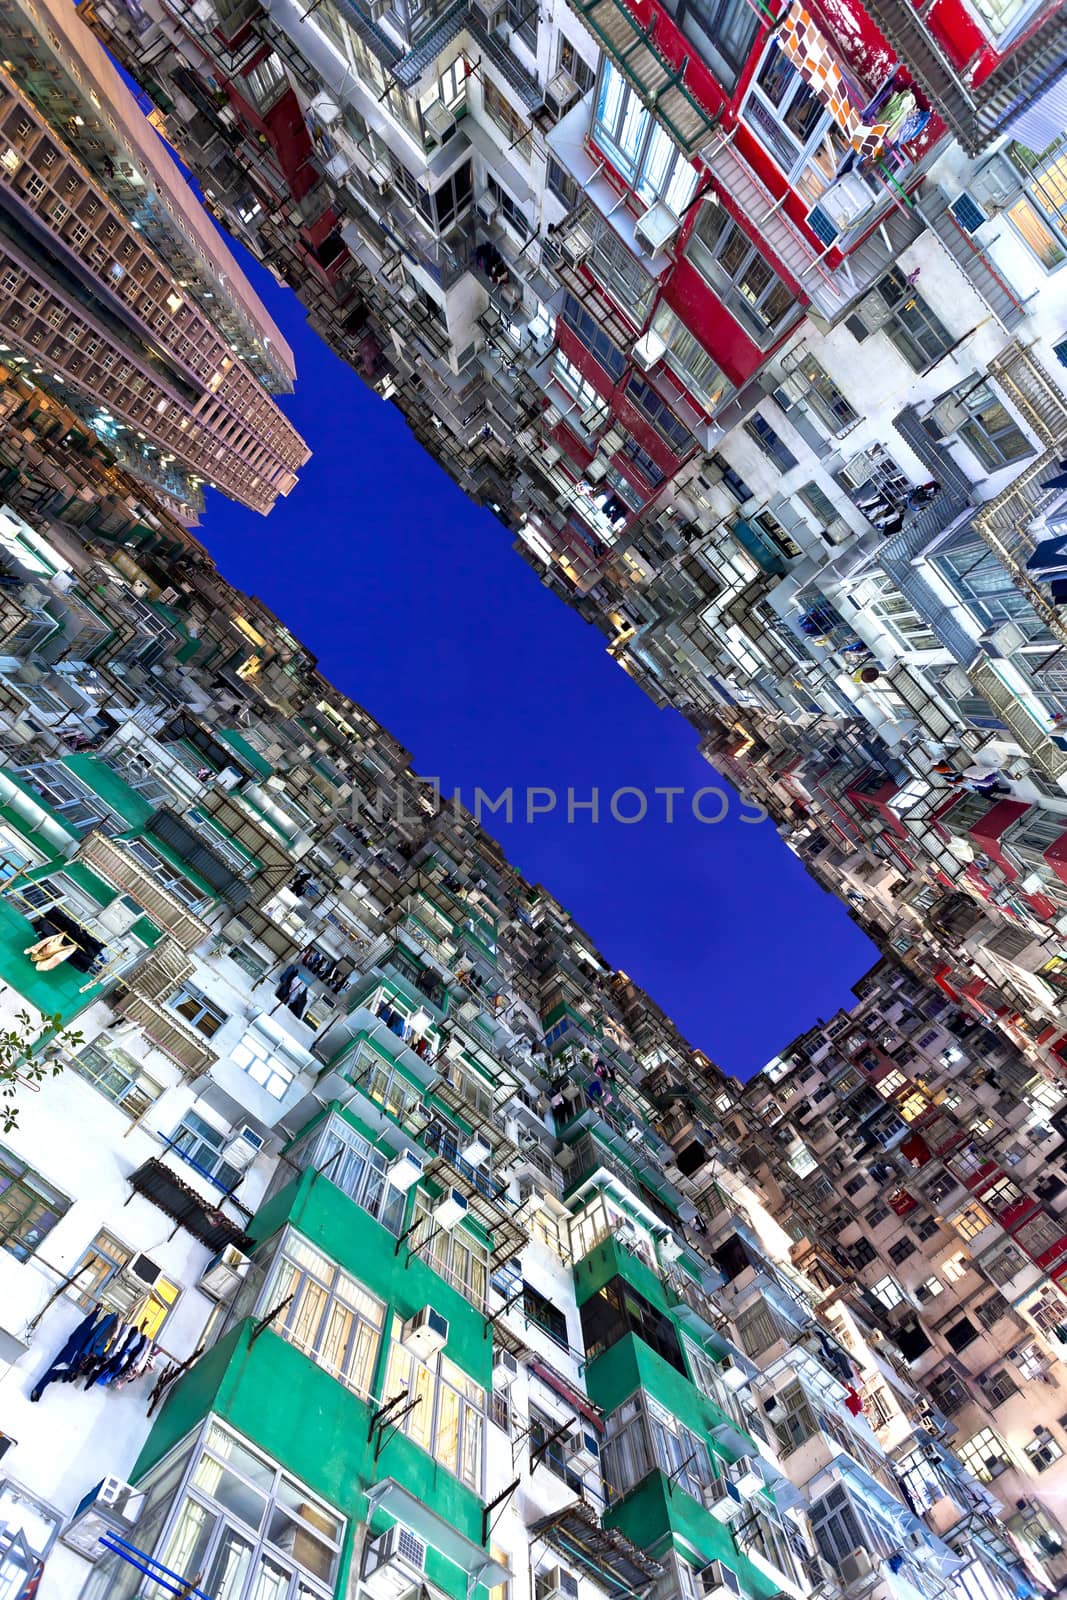 Packed urban in Hong Kong by kawing921